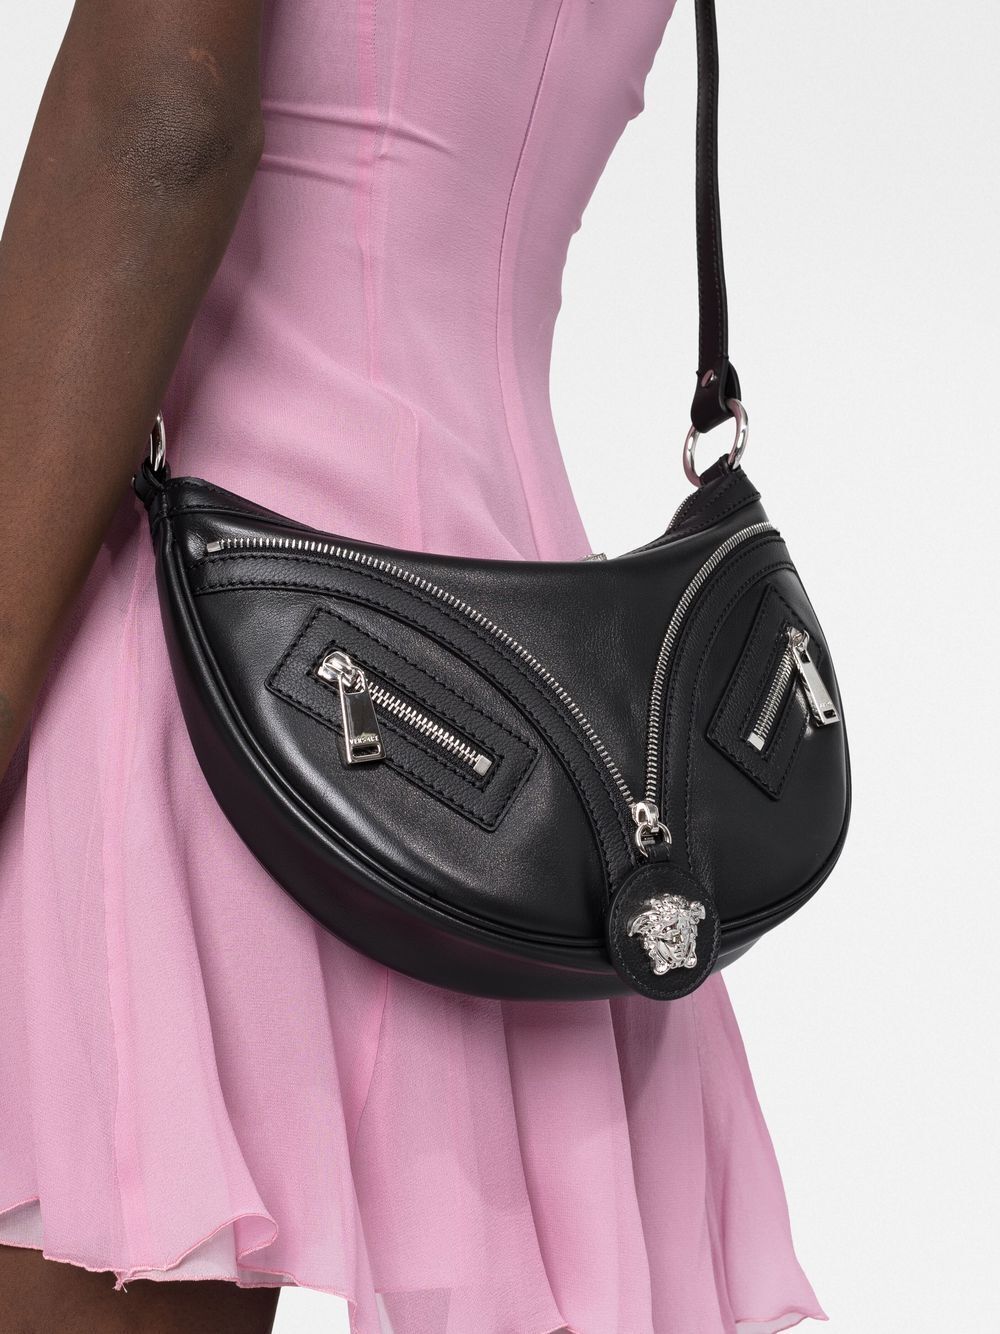 Versace Pink Mini Crystal Repeat Shoulder Bag